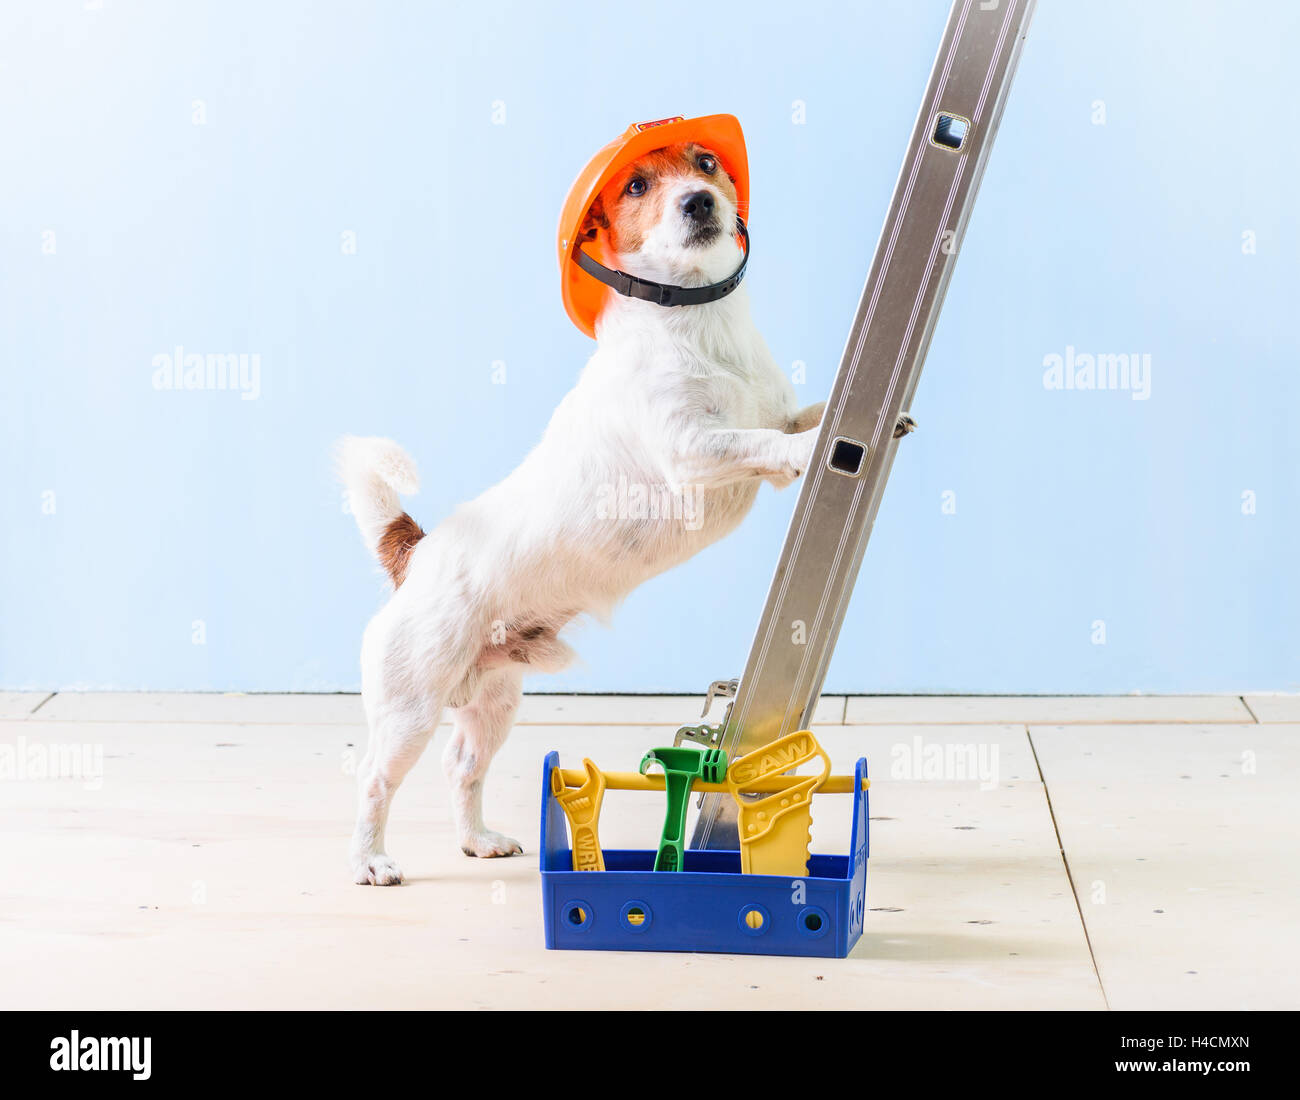 Humor-Arbeiter mit Kiste voller Werkzeuge auf Leiter stehend Stockfoto